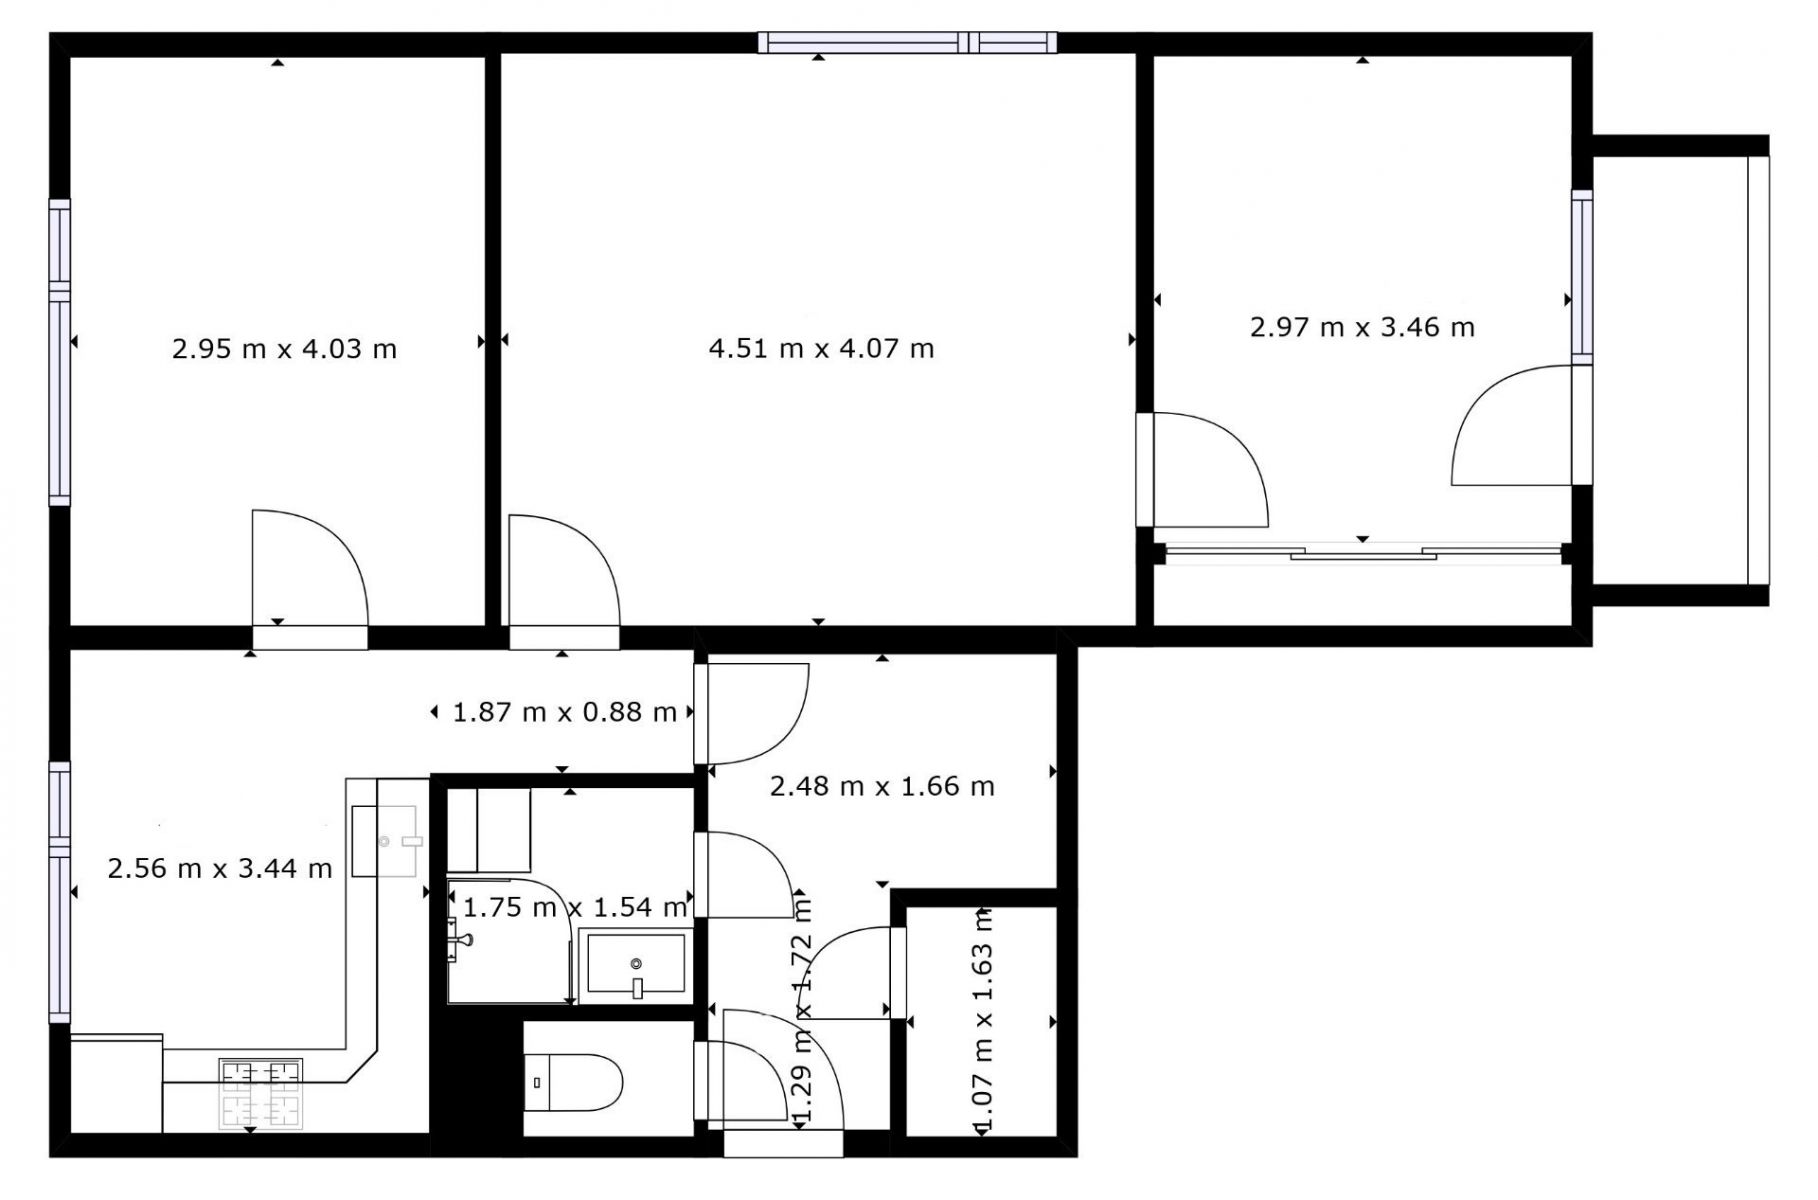 PRODEJ - zrekonstruovaný byt 3+1 ve Svitavách, obrázek č. 2